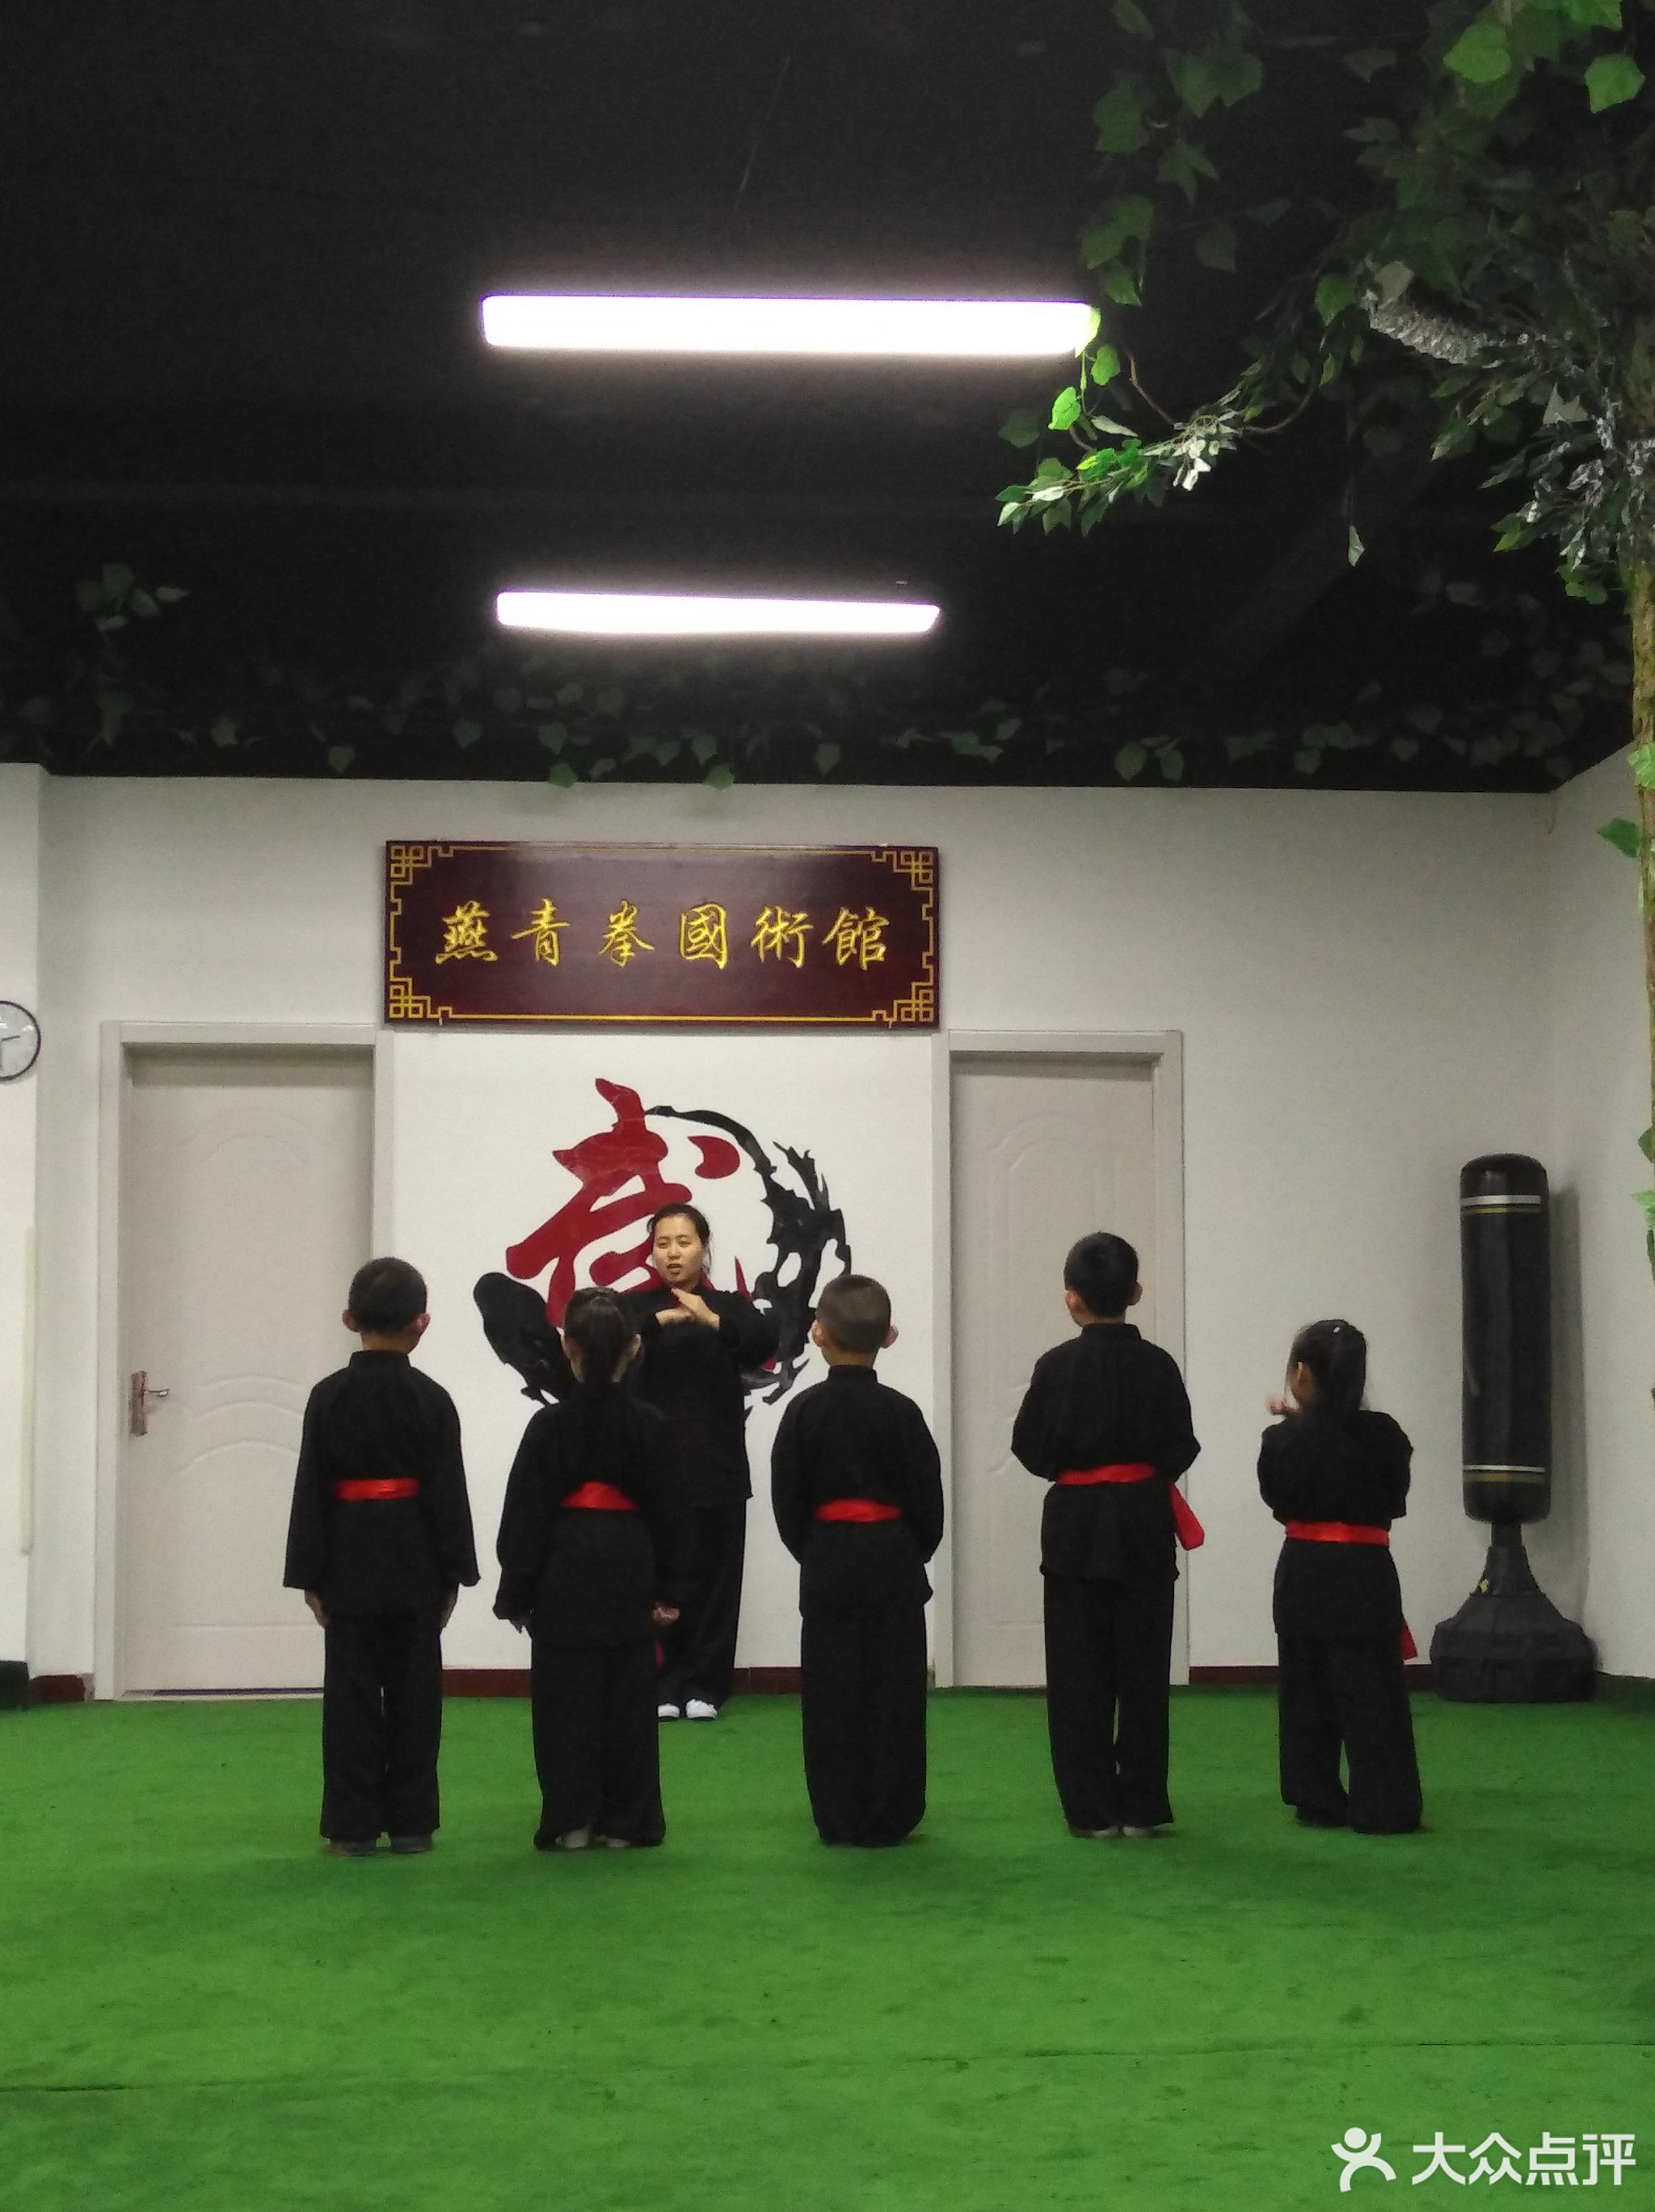              燕青拳国术馆